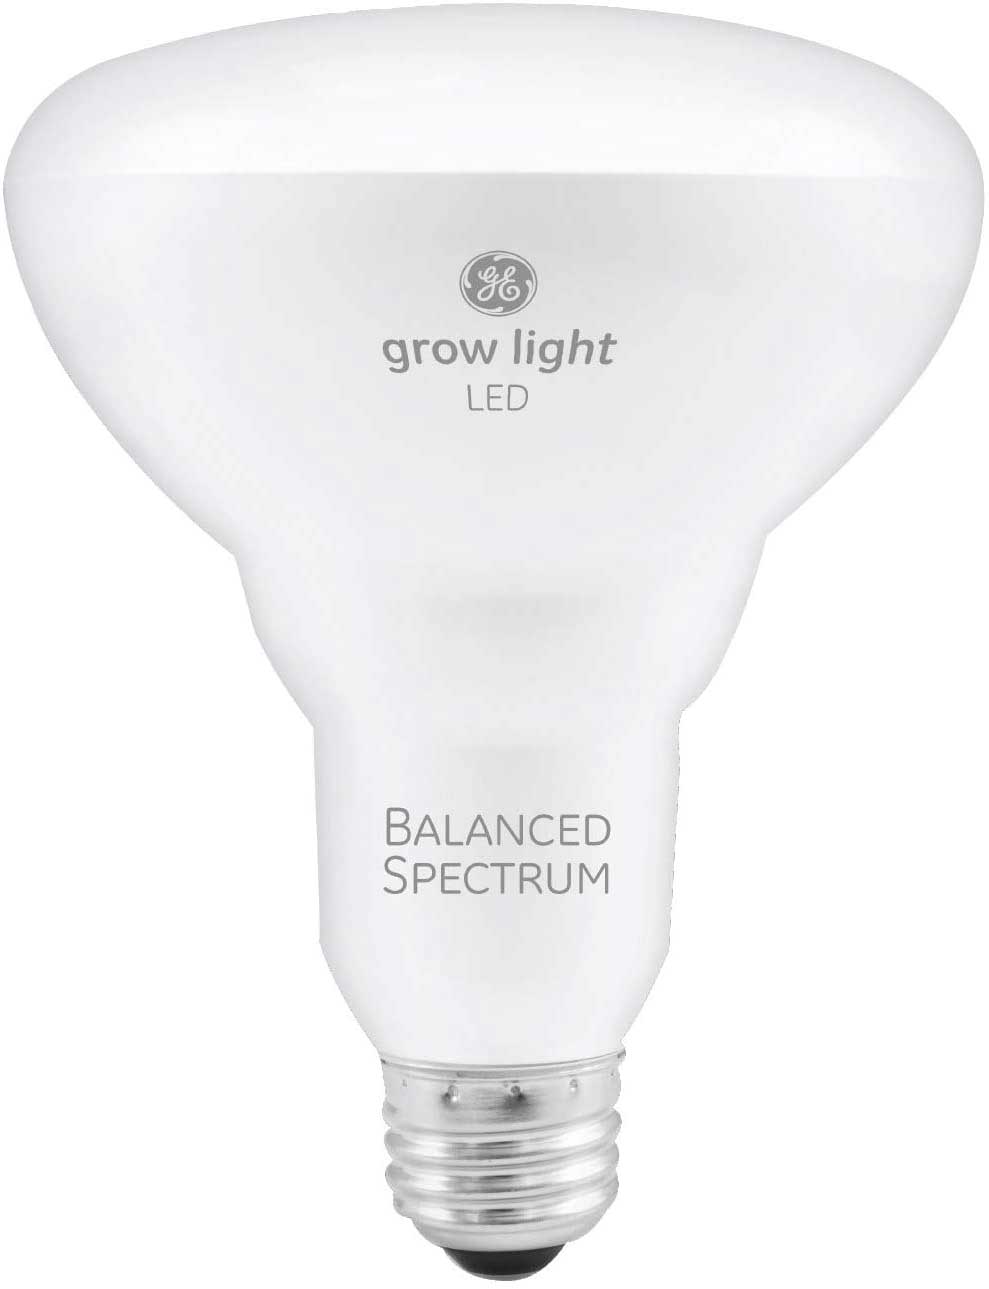 2.-GE-BR30-LED-Grow-Lights